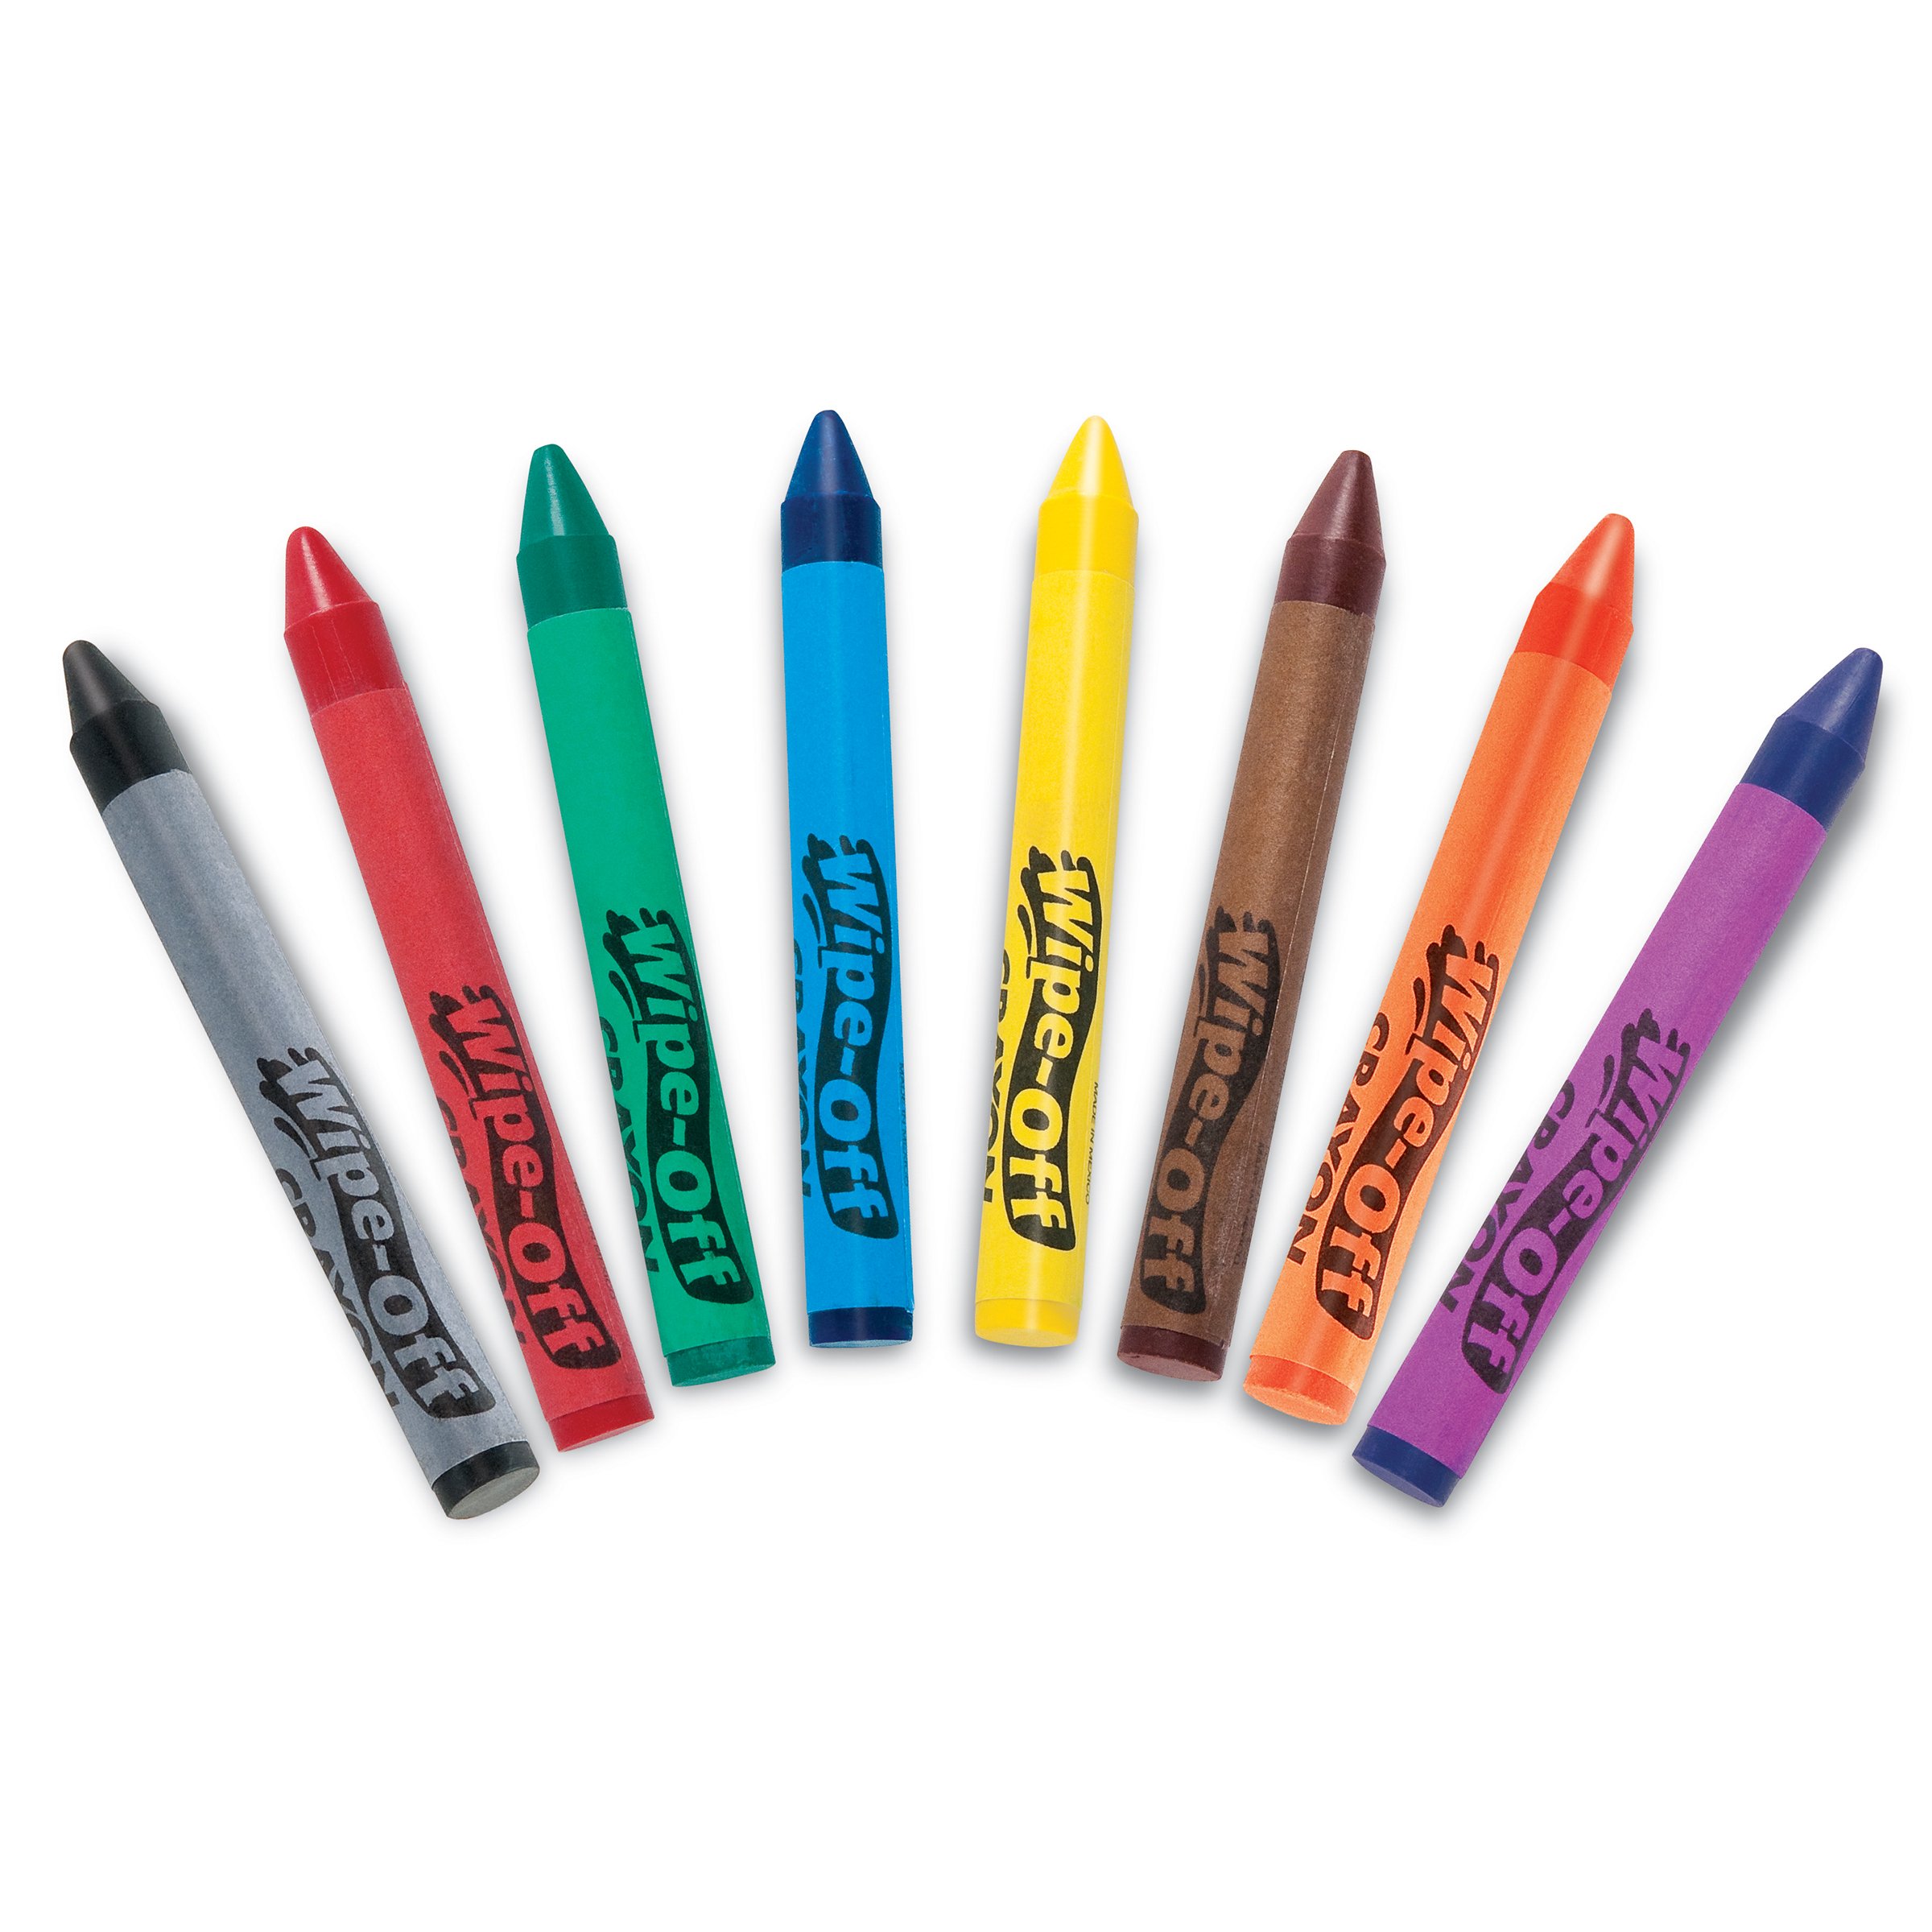 H-E-Buddy Jumbo Crayons - Shop Crayons at H-E-B